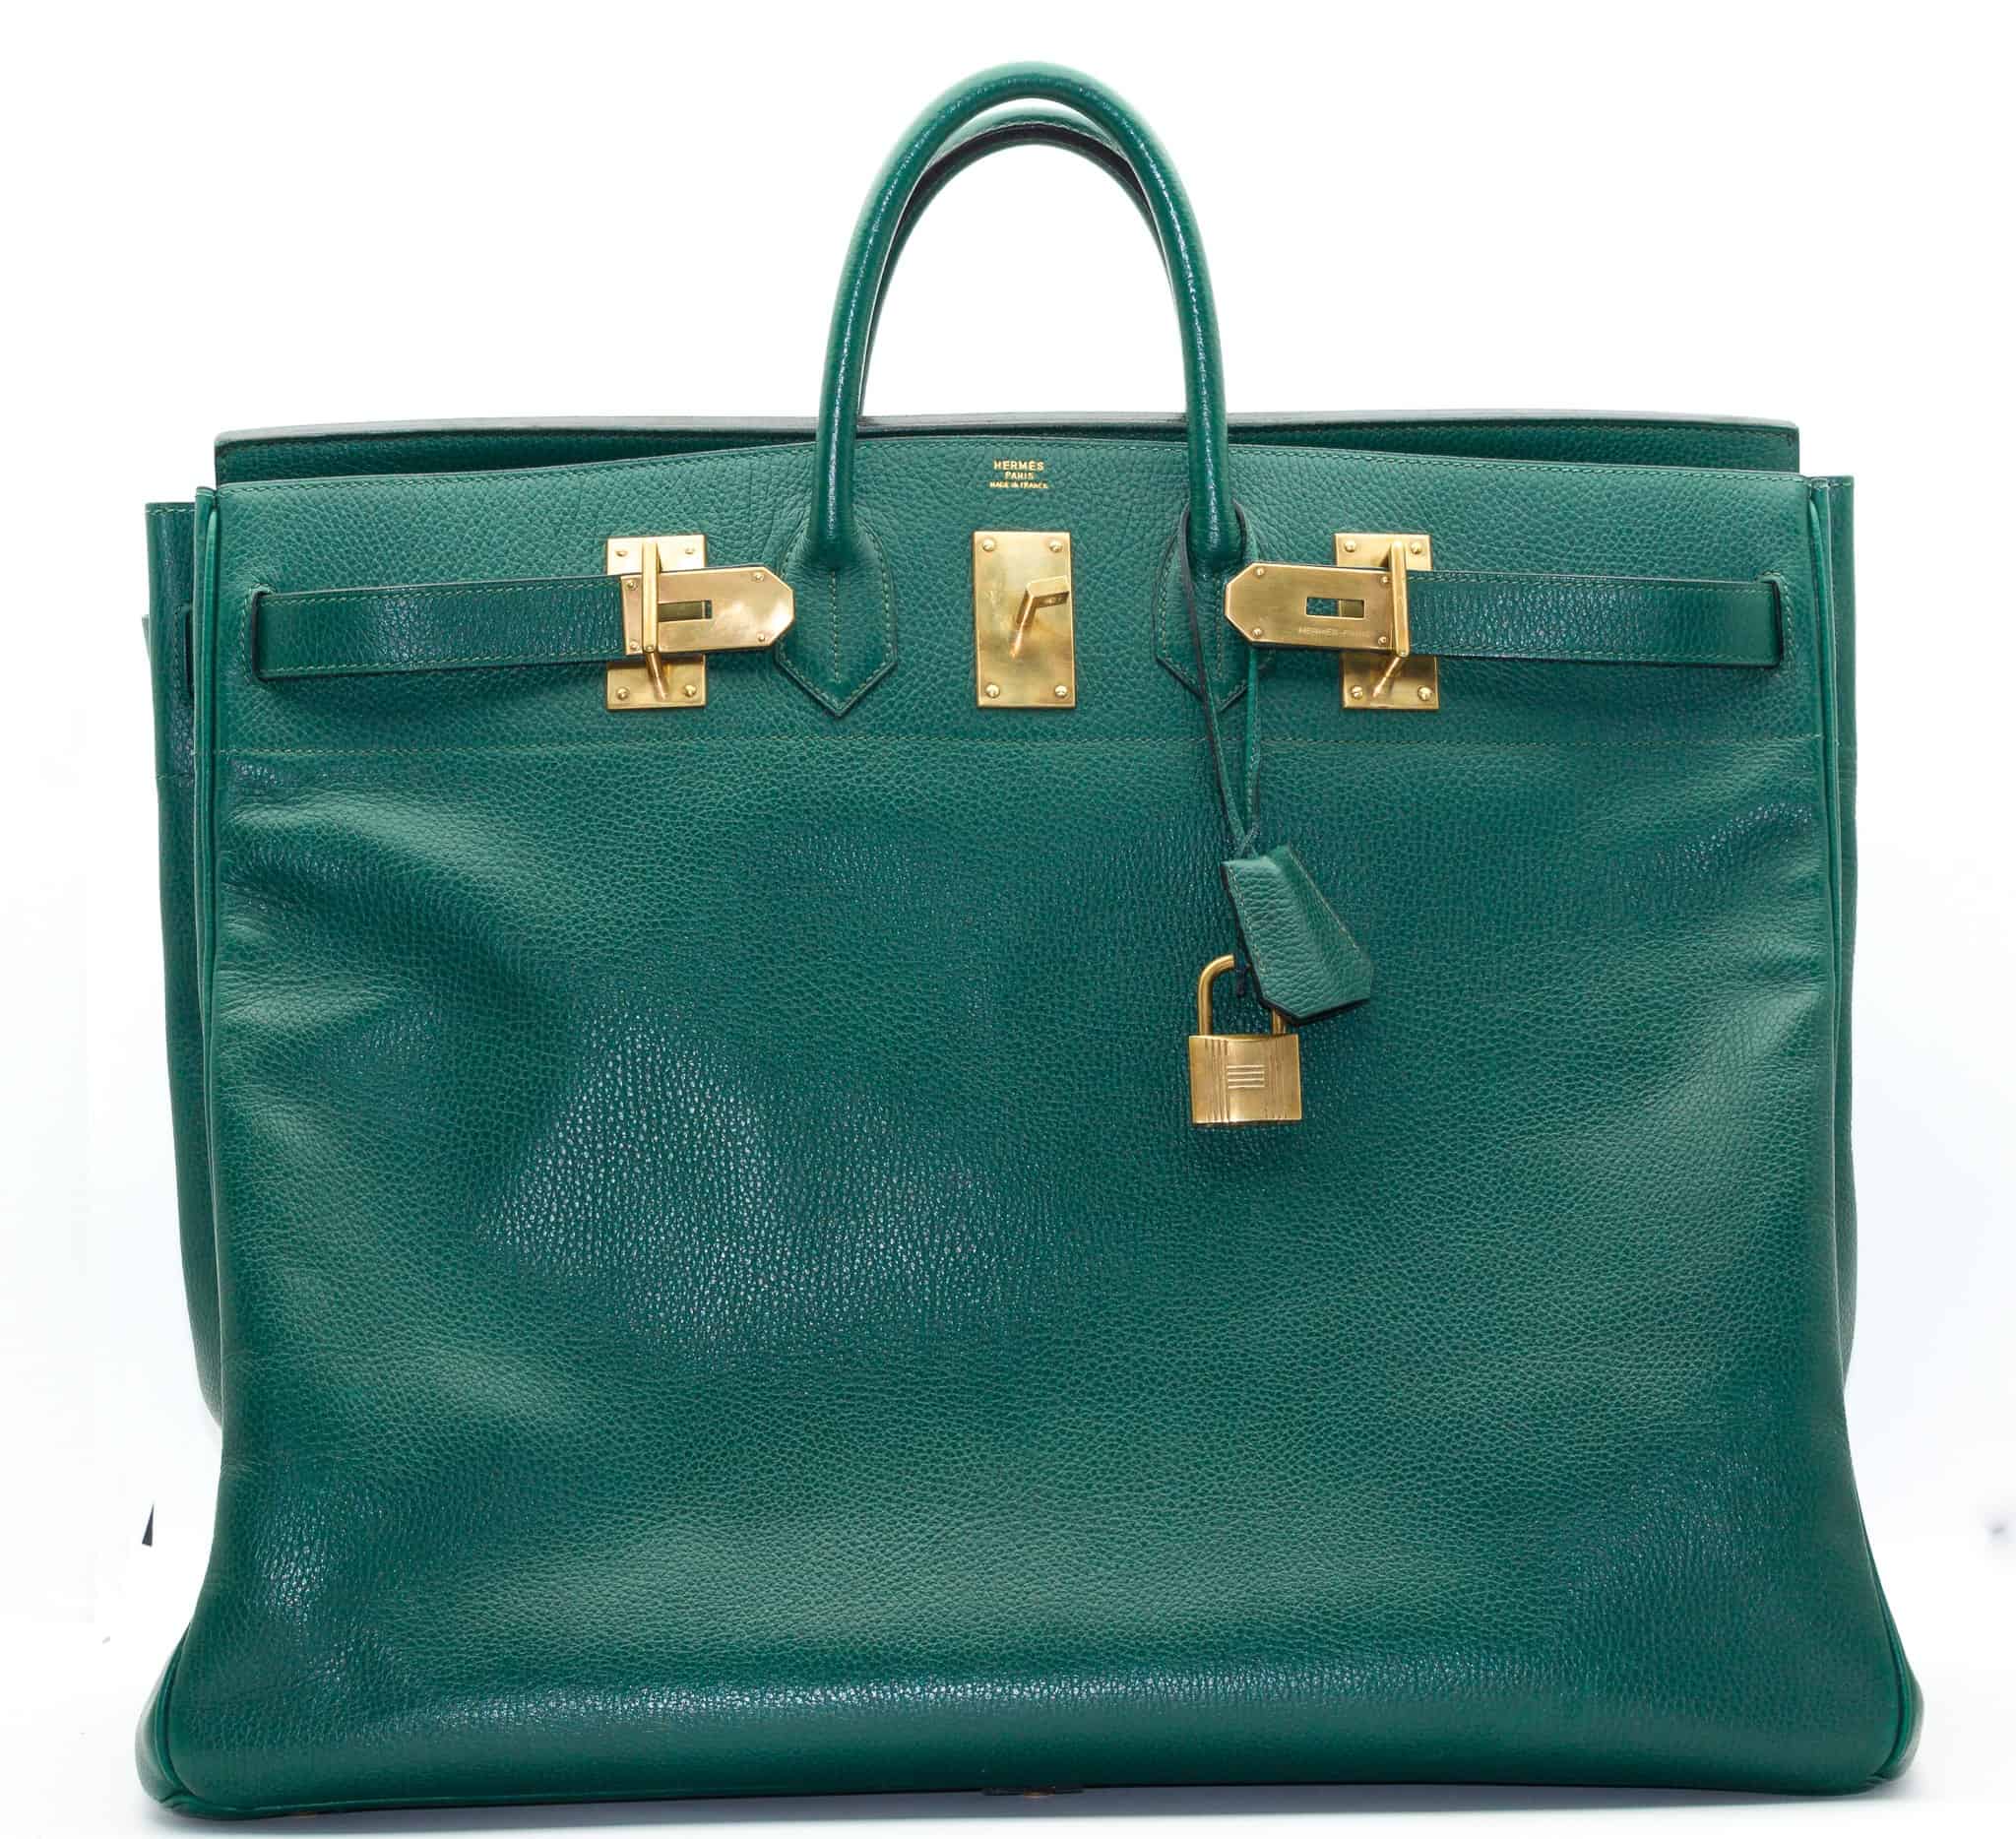 Sold at Auction: An Hermès Haut à Courroies travel bag, 1979